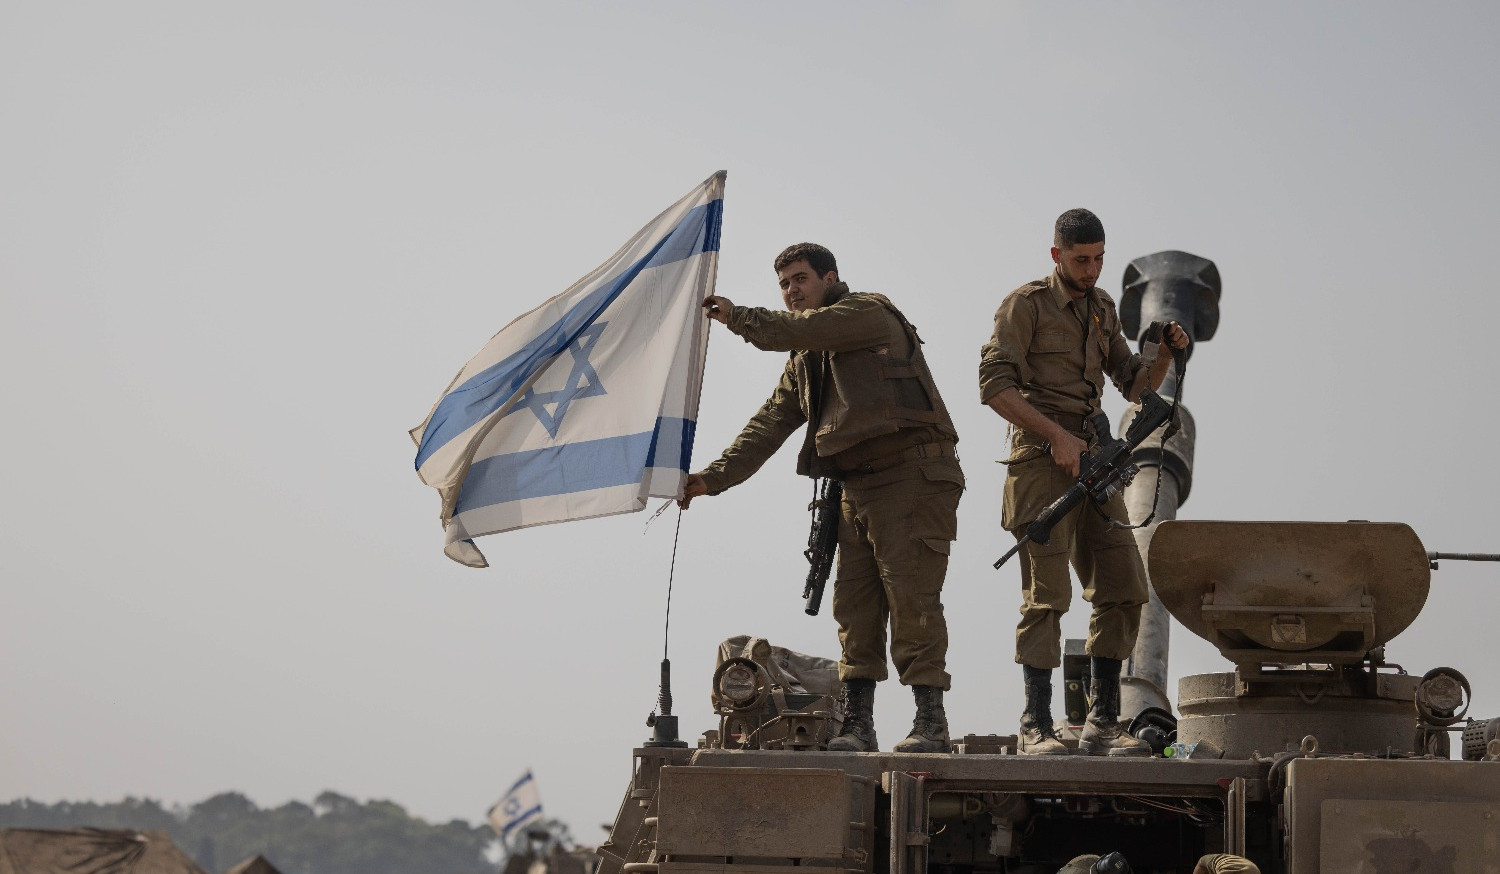 Գազայի հատվածում հրադադարի ավարտից հետո Իսրայելական բանակն ամենայն վճռականությամբ կվերսկսի պայքարը. Հալևի